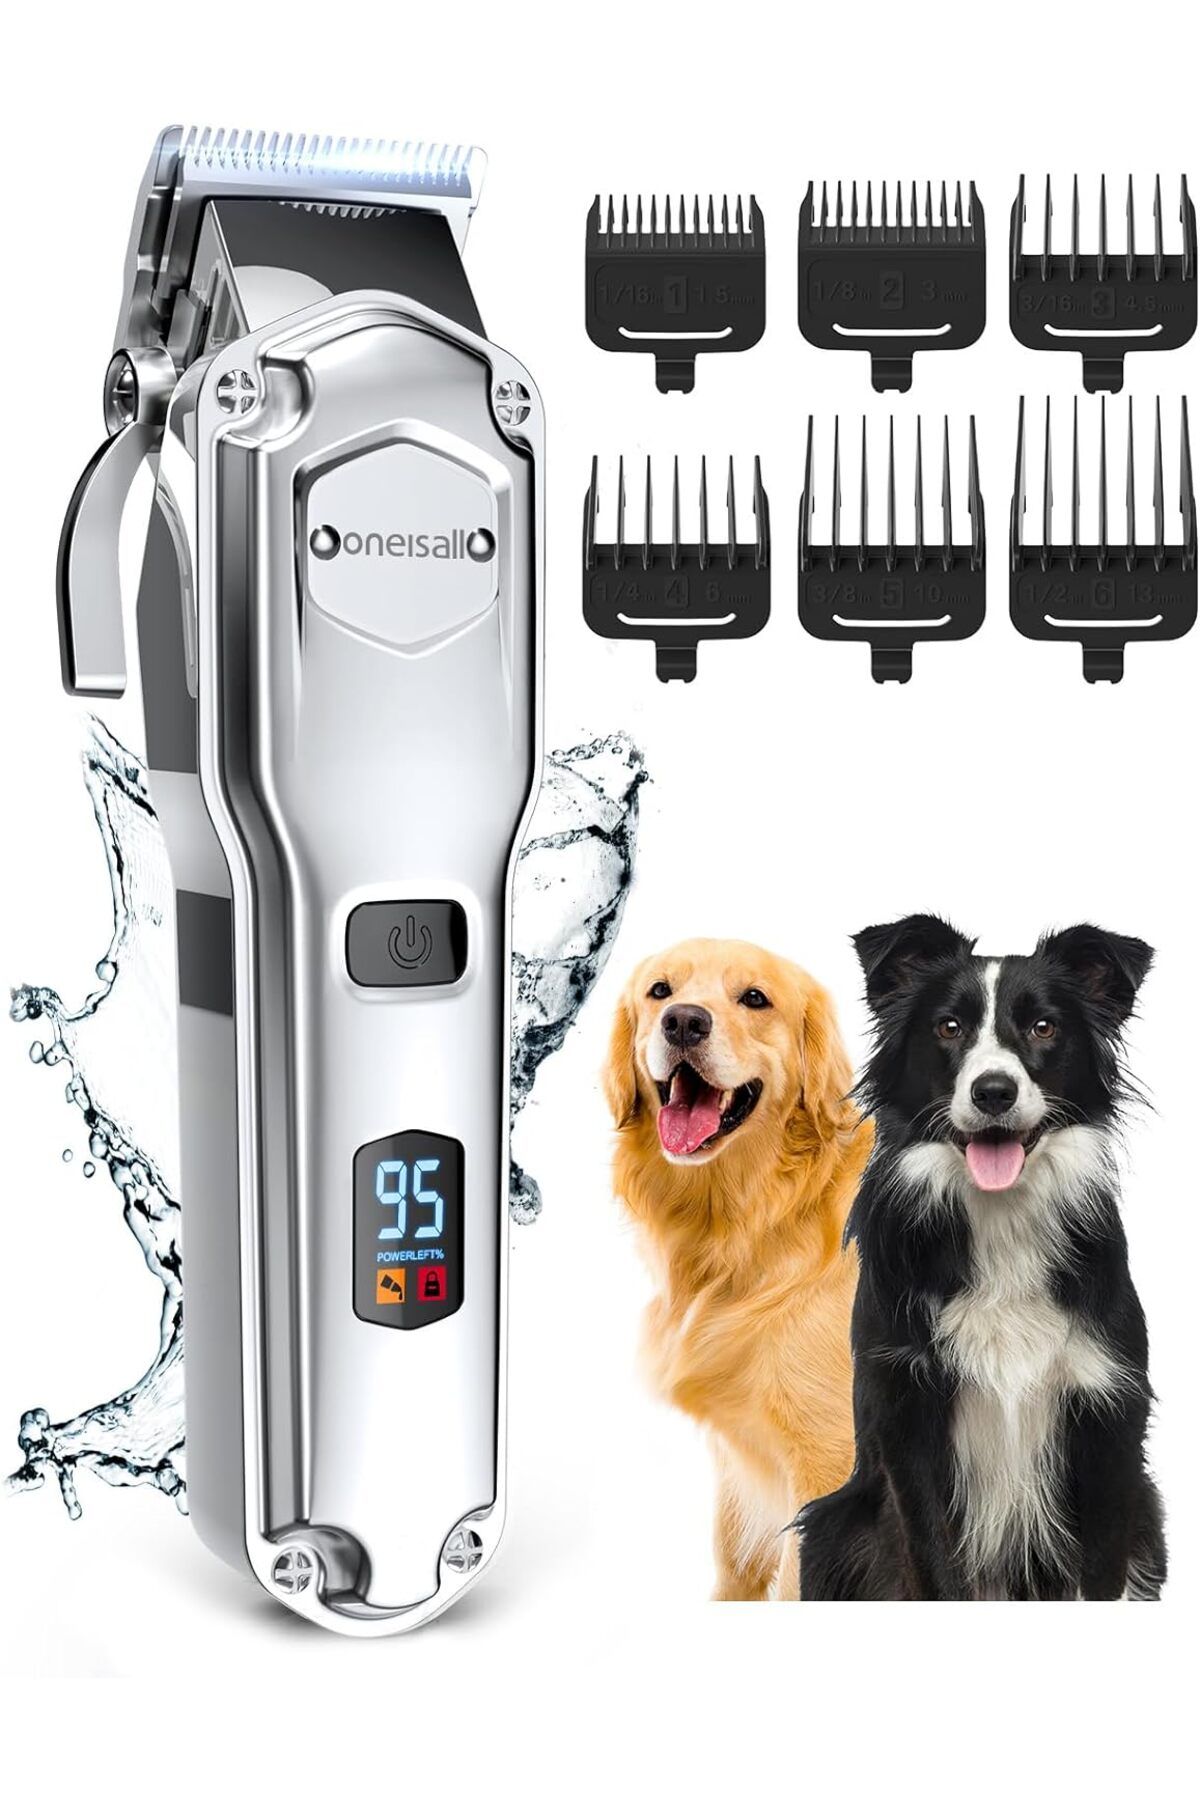 oneisall Sessiz Köpek Tıraş Makinesi, IPX7 Su Geçirmez Profesyonel Köpek Kılı Kesme Makinesi